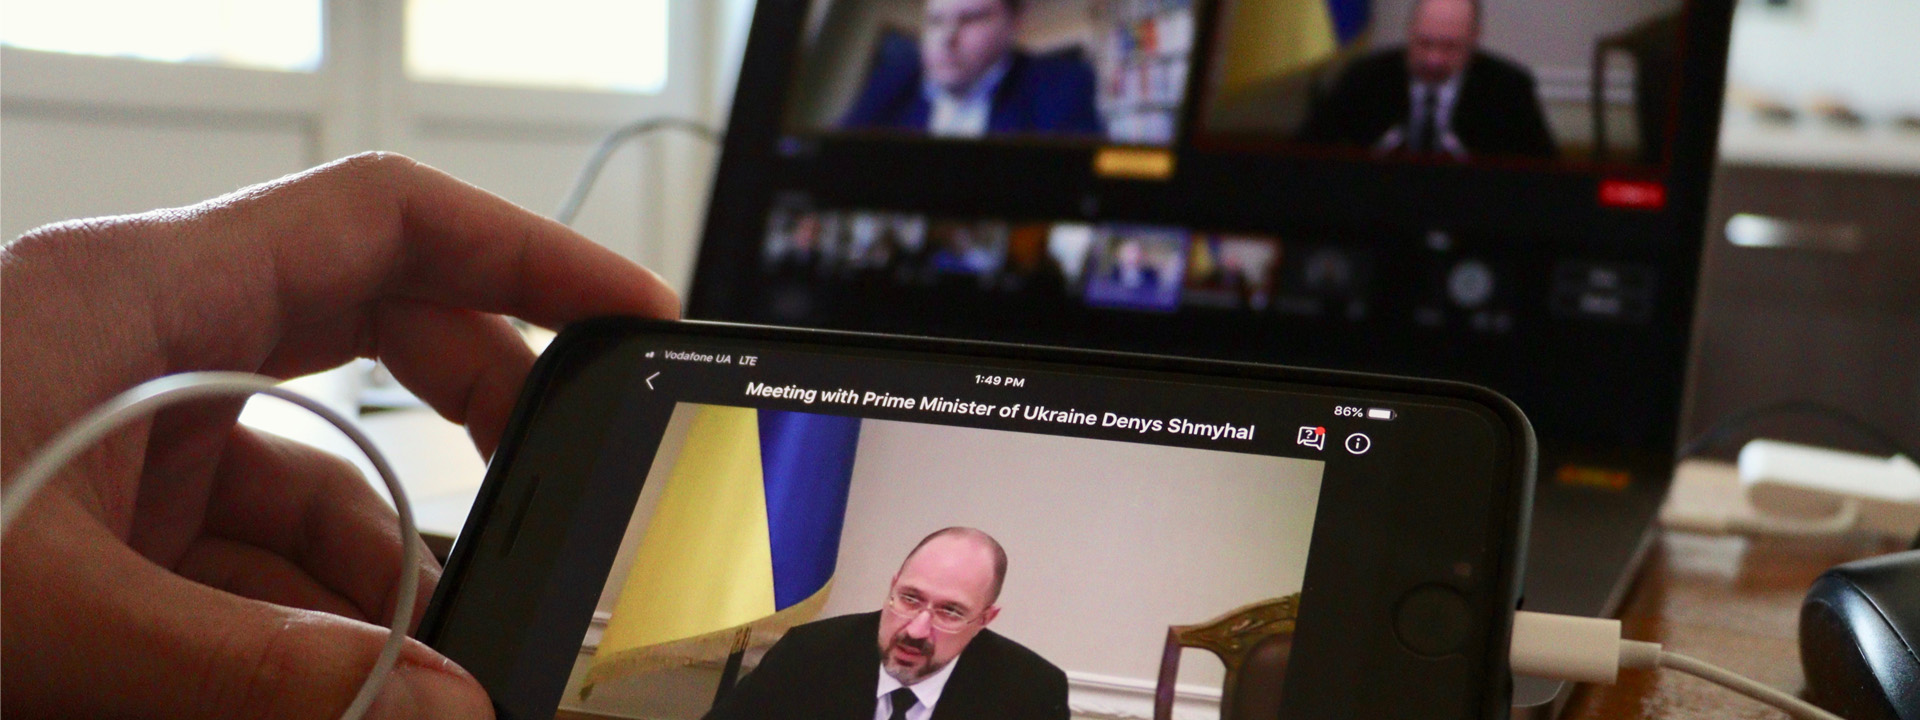 Перша онлайн зустріч бізнес-спільноти з прем’єр-міністром України Денисом Шмигалем